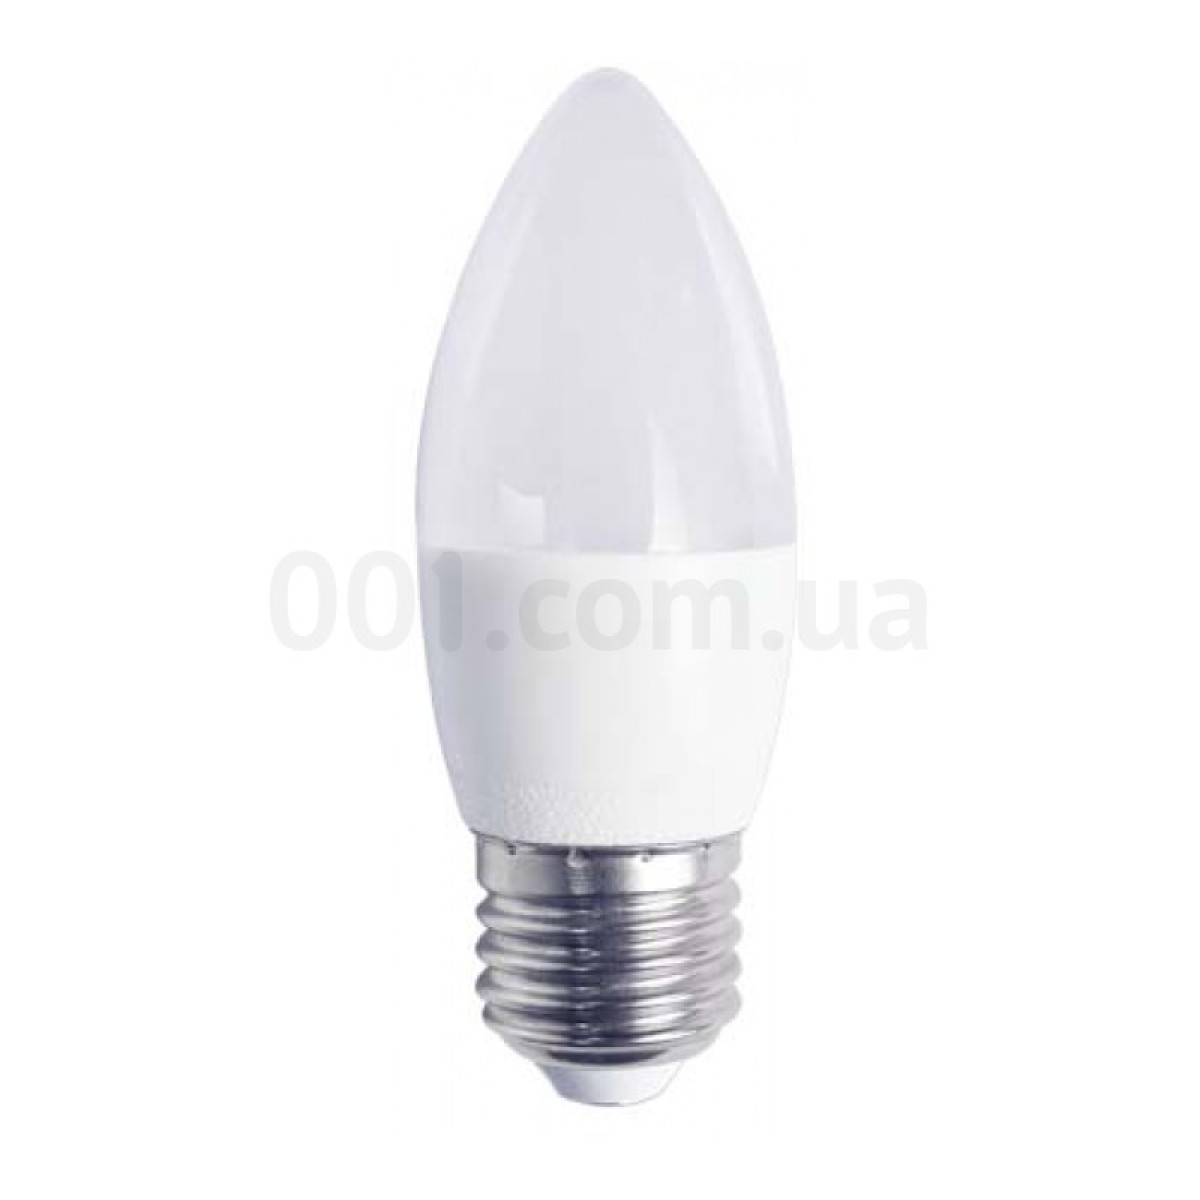 Світлодіодна лампа LB-737 C37 (свічка) 6Вт 2700K E27, Feron 256_256.jpg